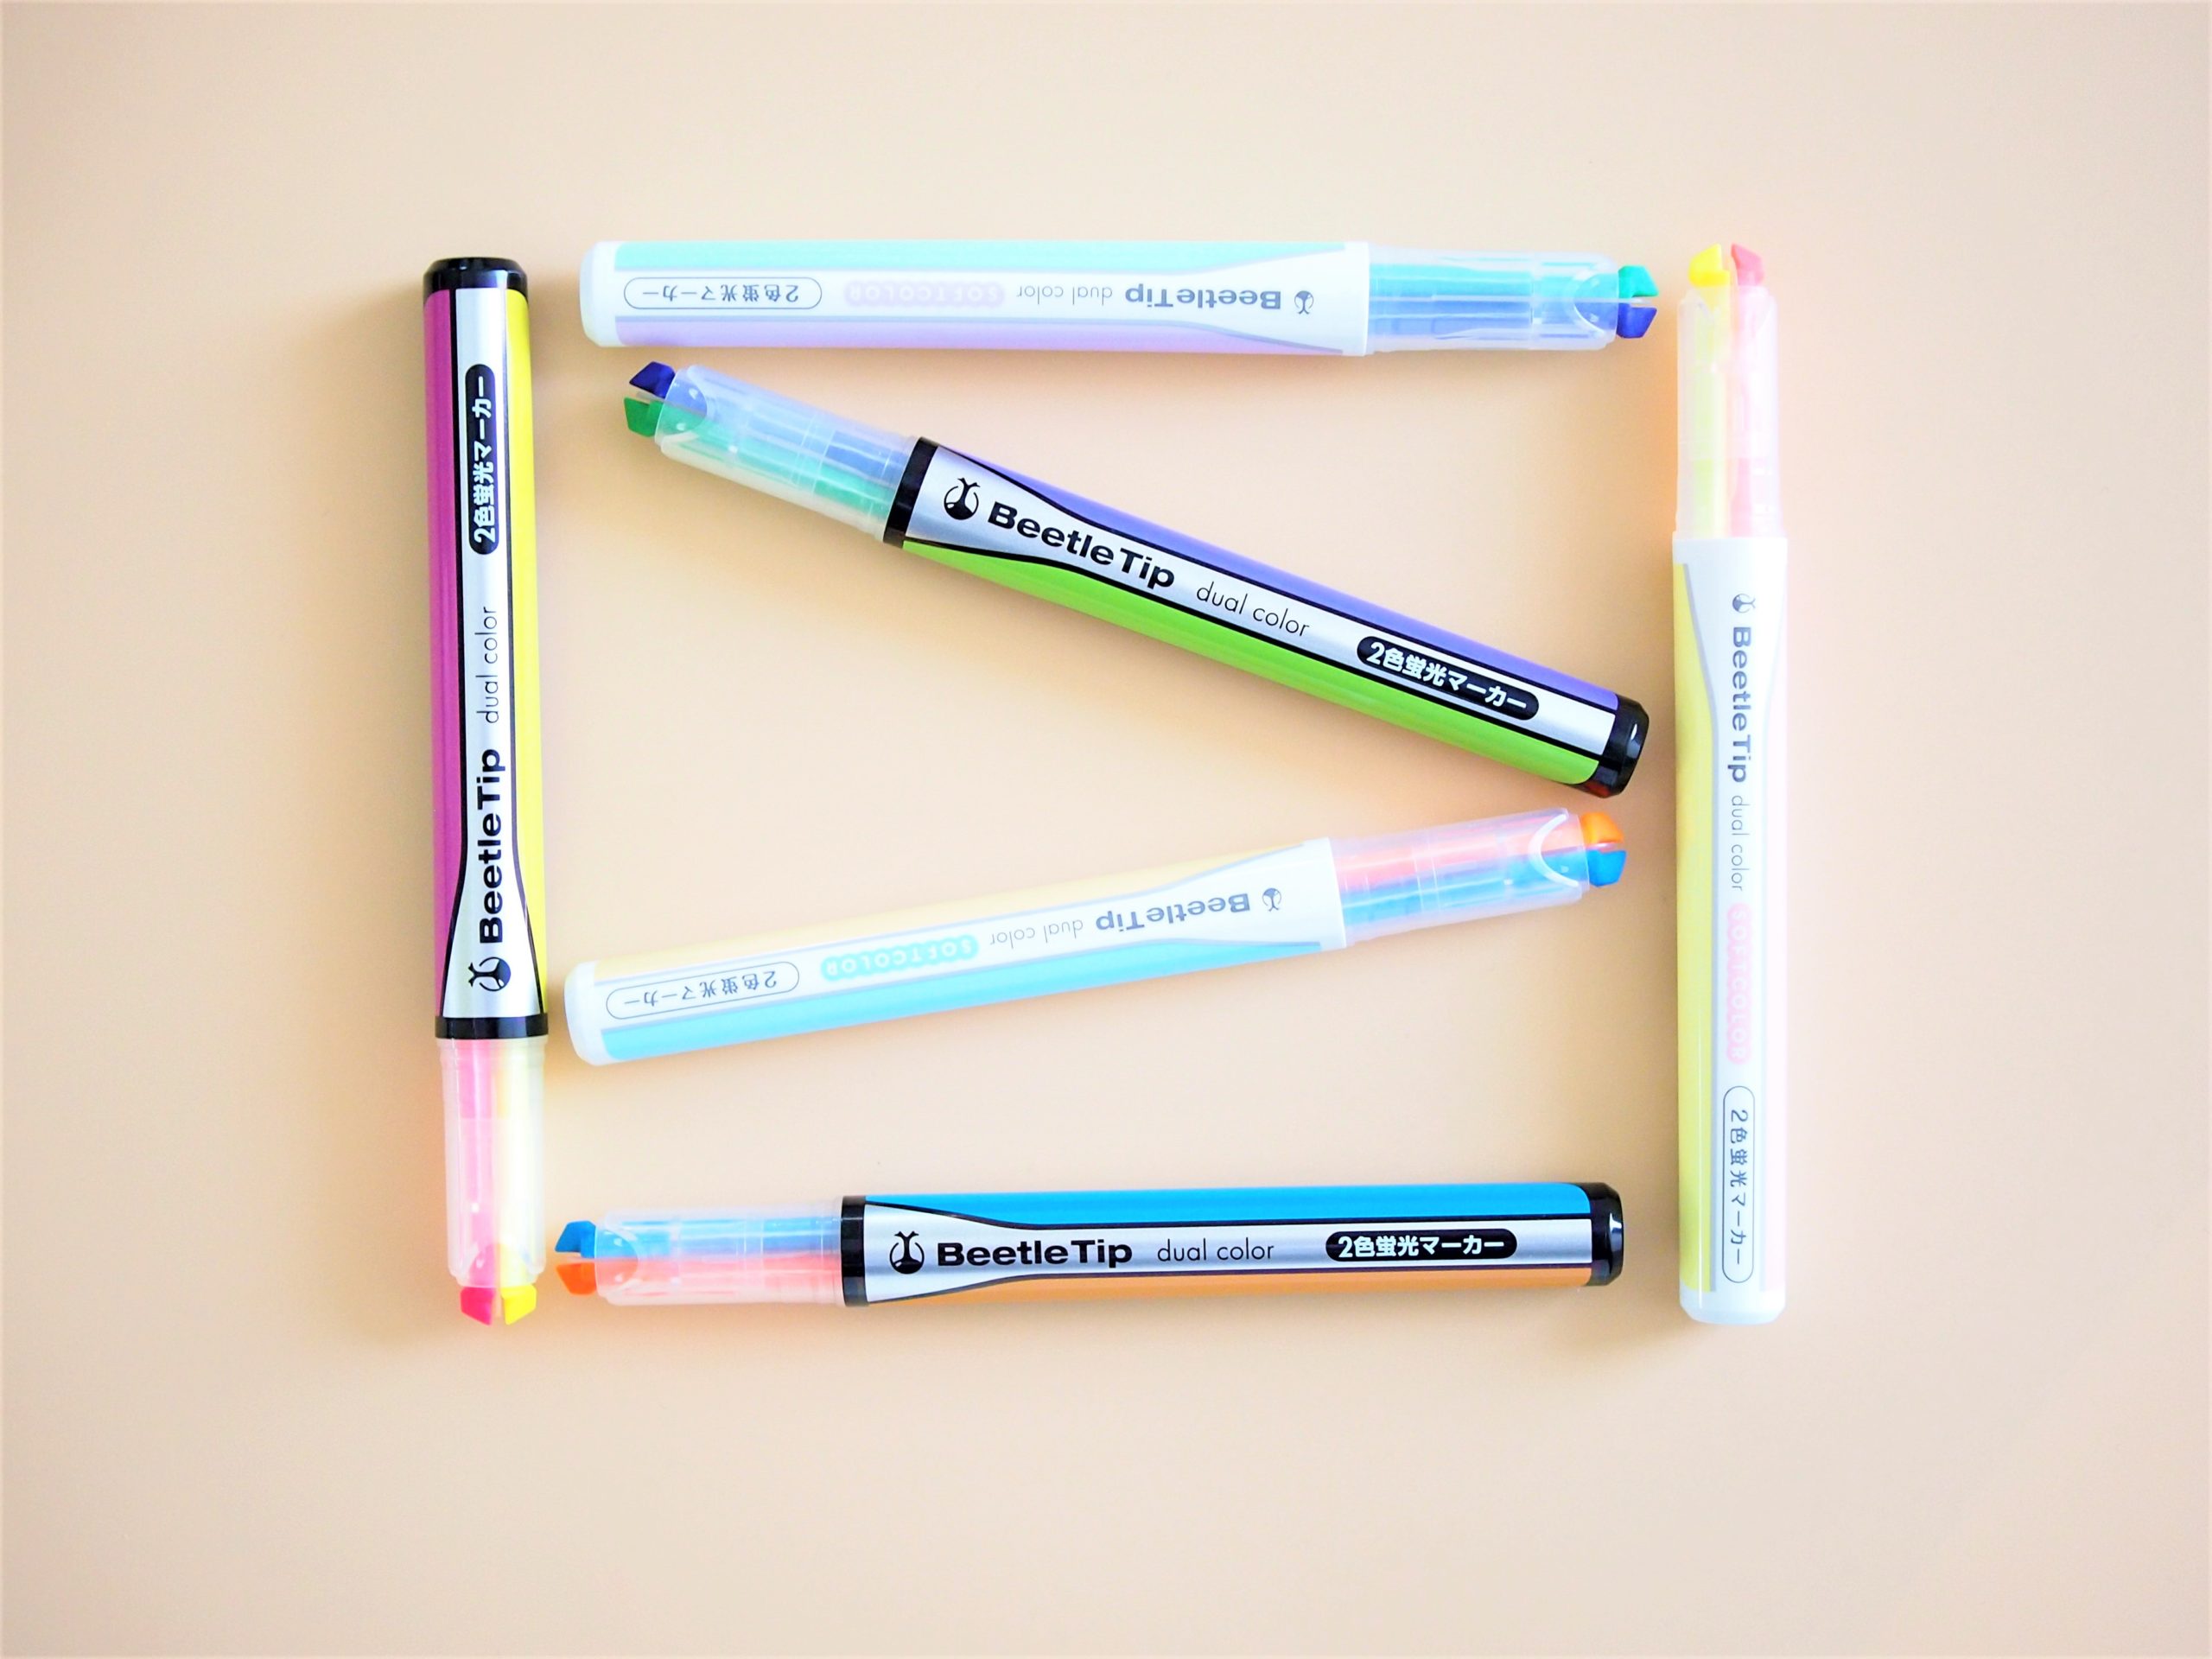 1本で2色使える蛍光ペン「ビートルティップ・デュアルカラー」を 